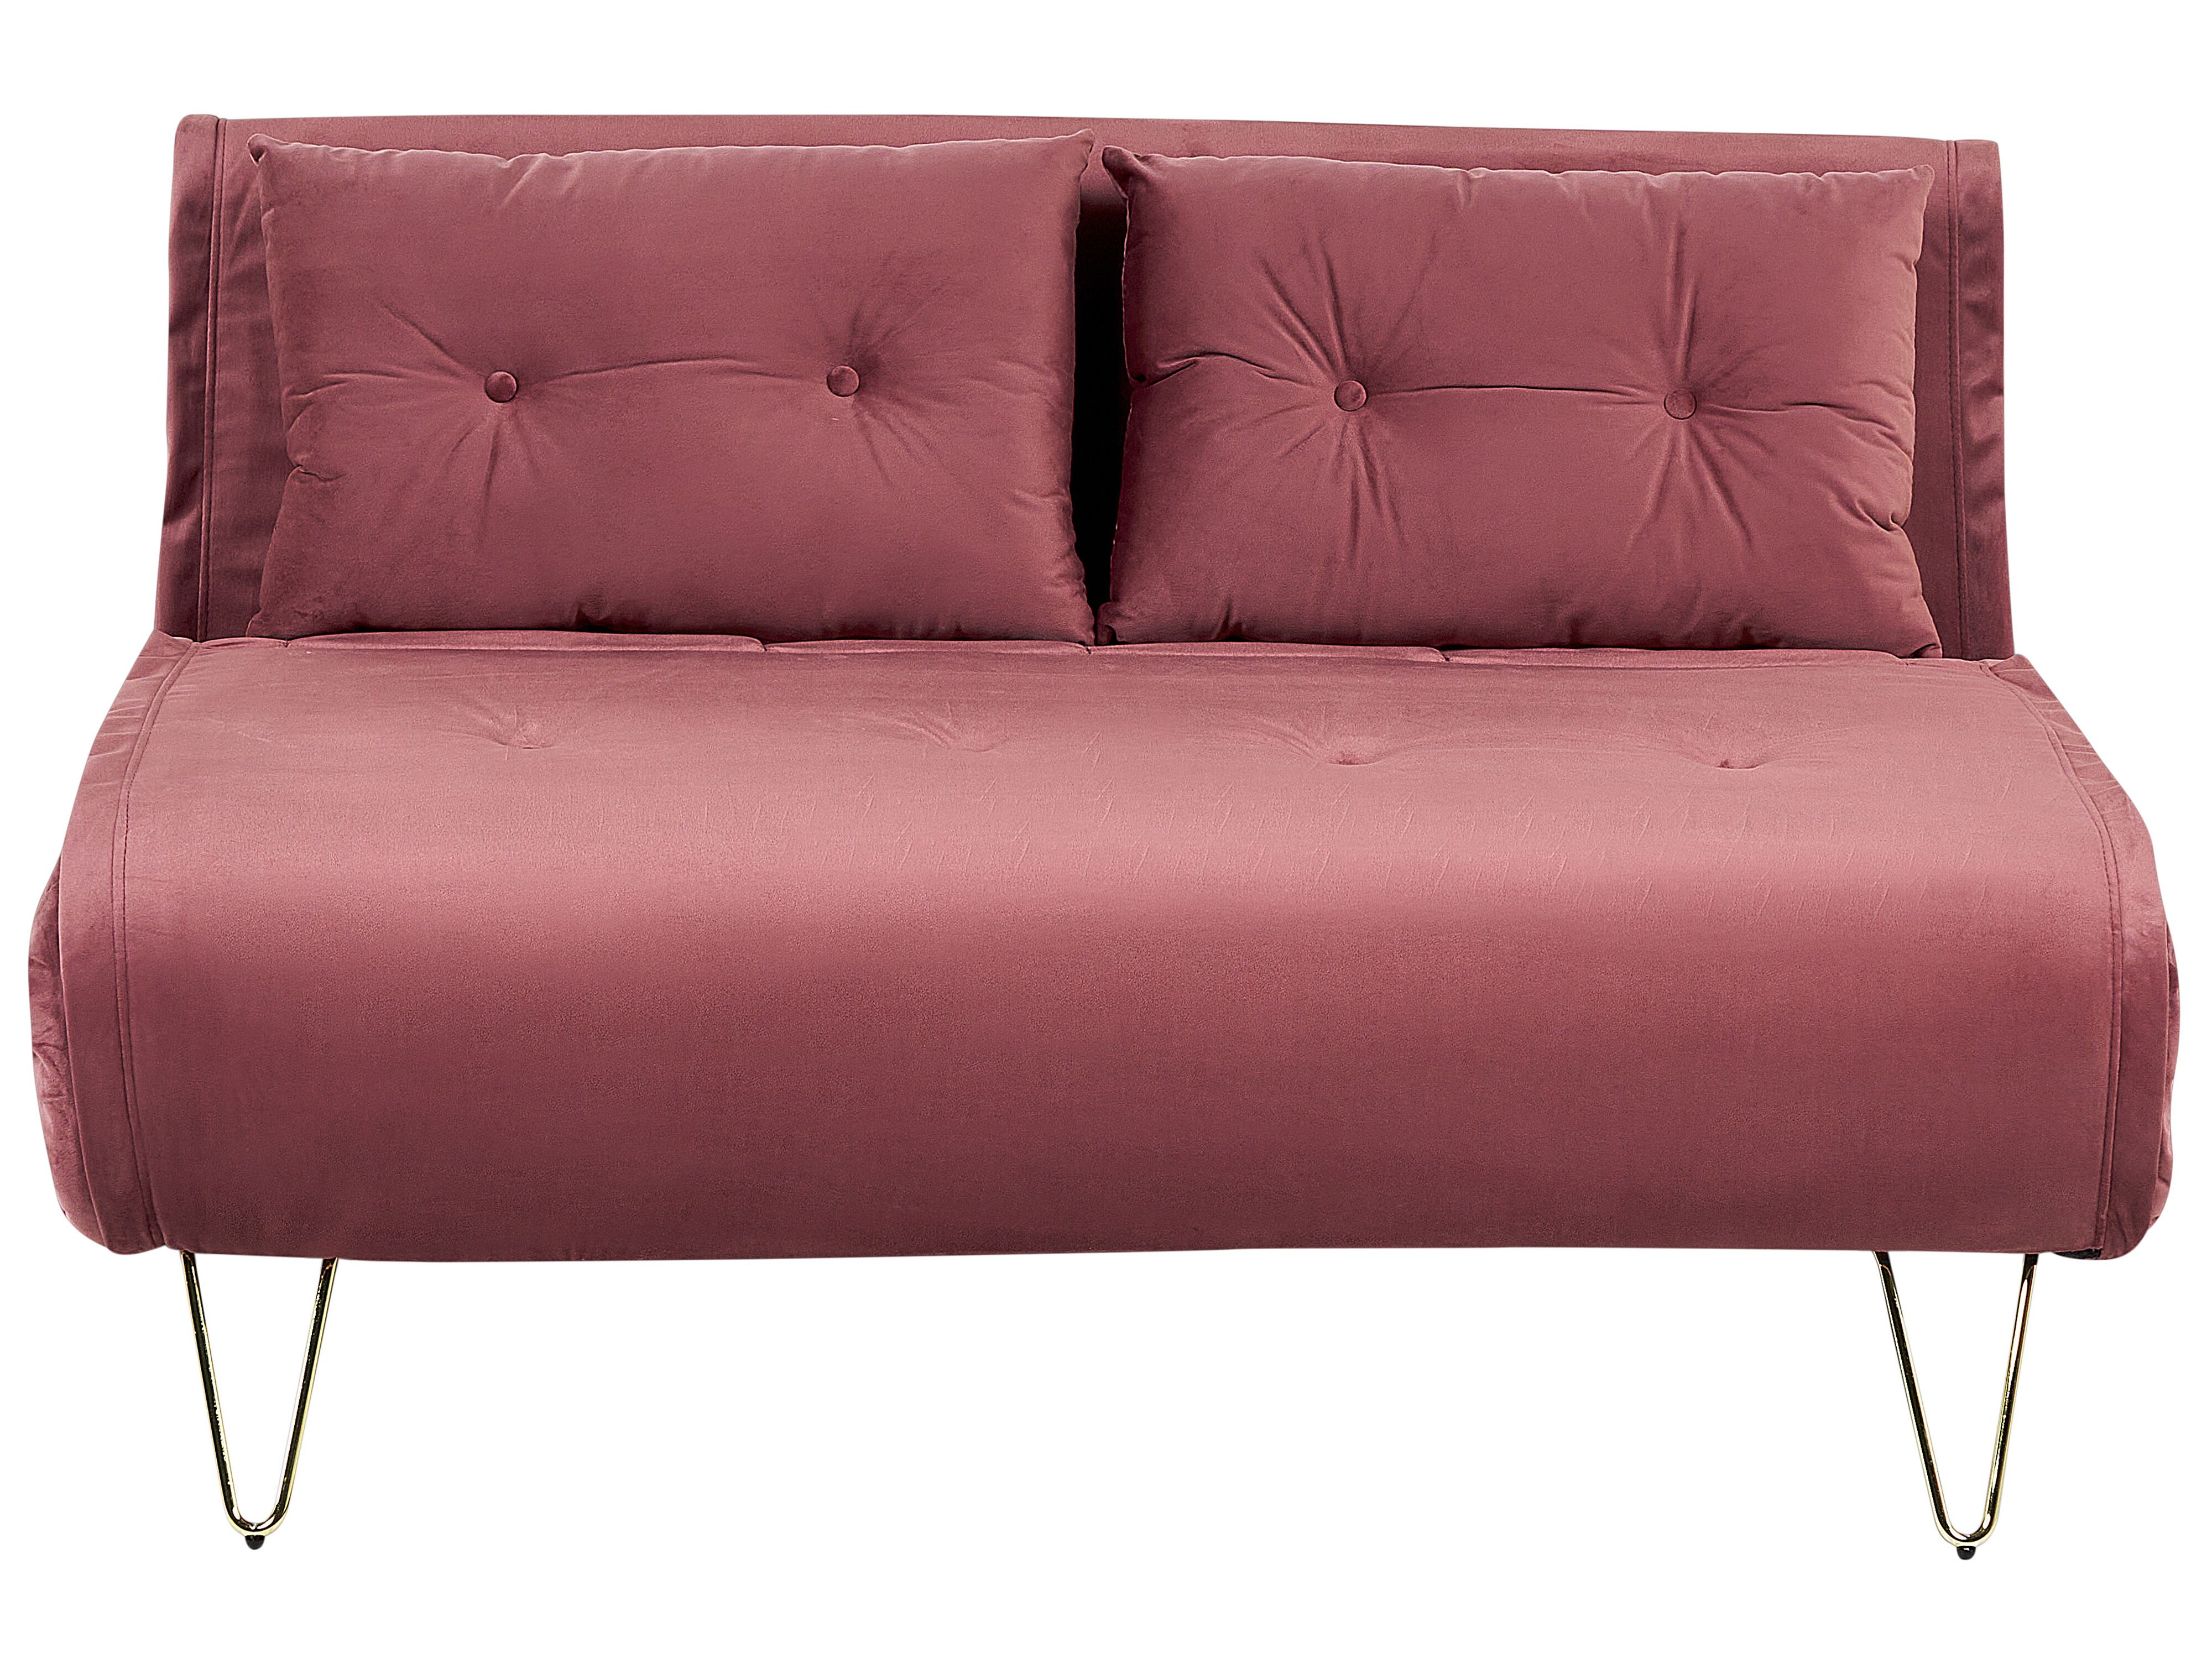 2 Seater Velvet Sofa Bed Pink Vestfold